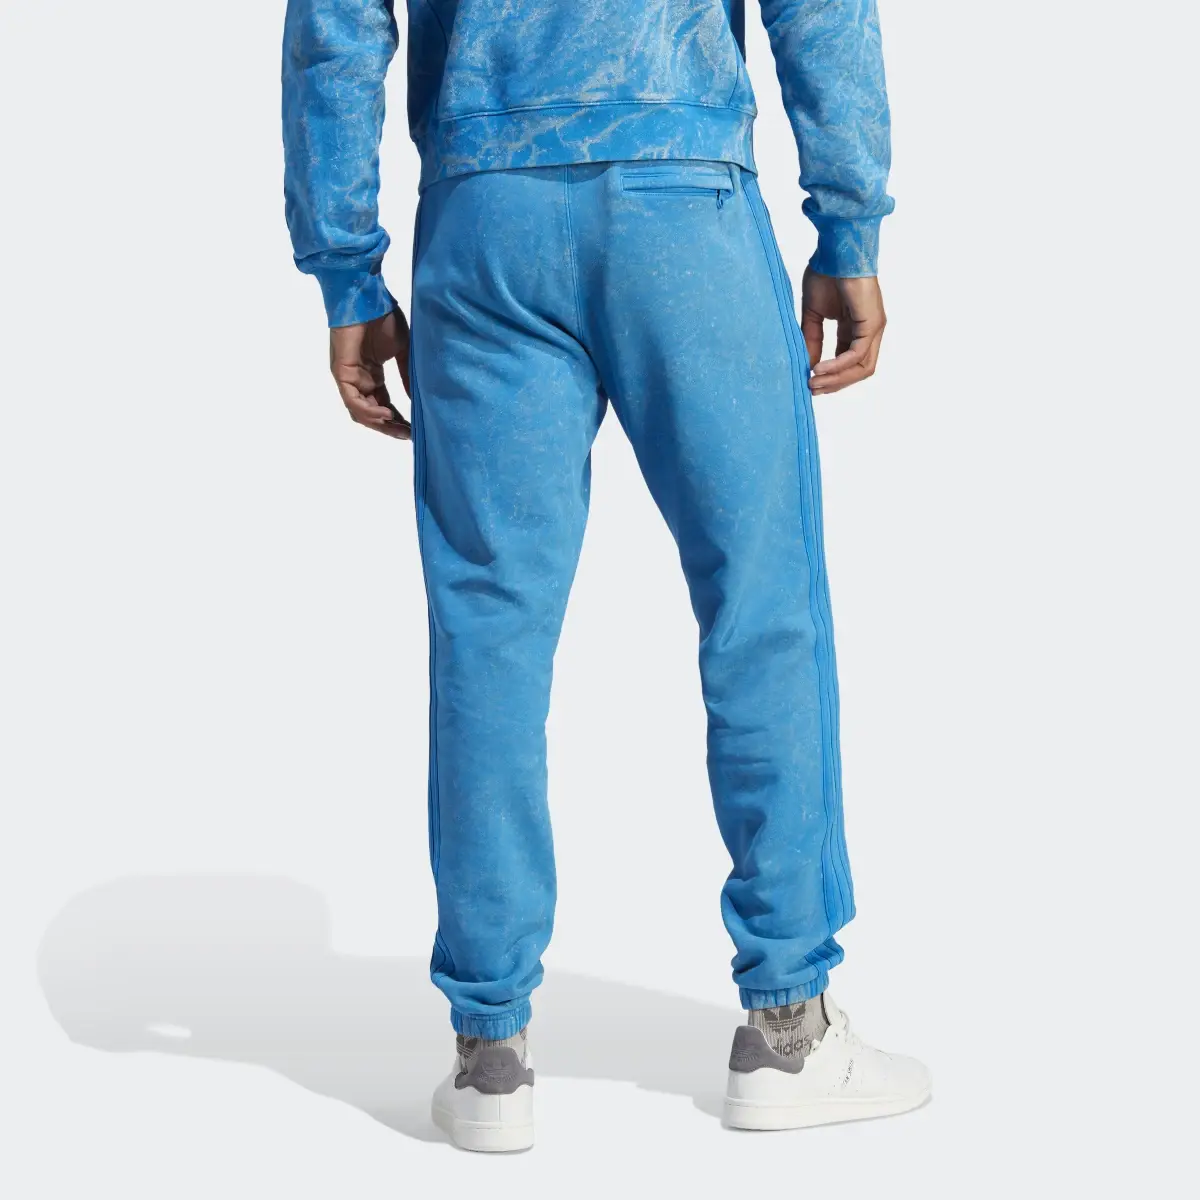 Adidas Spodnie Blue Version Washed. 2